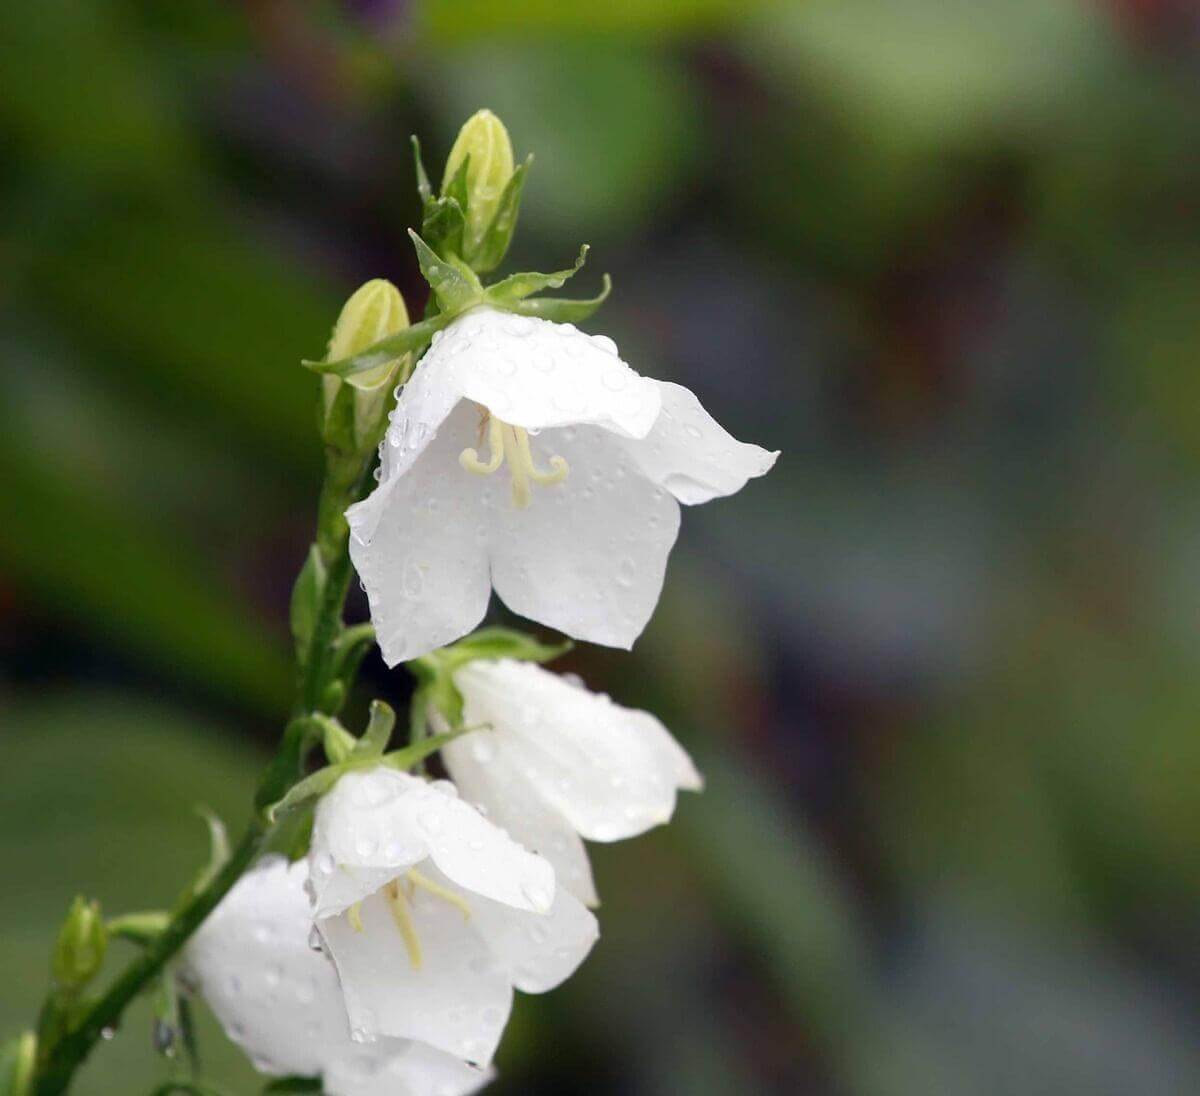 <p style="text-align: justify;">C'est le 20 décembre 1999 que Candiac s'est dotée d'une fleur emblème : la Campanula carpatica blanche Campanule des Carpates en français - White Clips / Tussock Bellflower en anglais). Petite vivace, elle se caractérise par la forme de ses fleurs en clochettes pendantes, d'où l'origine de son nom latin.</p>
<p style="text-align: justify;">Populaire et d'entretien facile, sa spectaculaire floraison blanche en début d'été contribue à éclairer les endroits mi-ombragés. Par ailleurs, sa capacité d'adaptation à divers types de sols et d'ensoleillements lui permet de fleurir abondamment partout ! C'est pourquoi les citoyens de Candiac sont invités à planter des campanules sous les arbres, dans une rocaille, dans les boîtes à fleurs ou encore, en bordure des plates-bandes. </p>